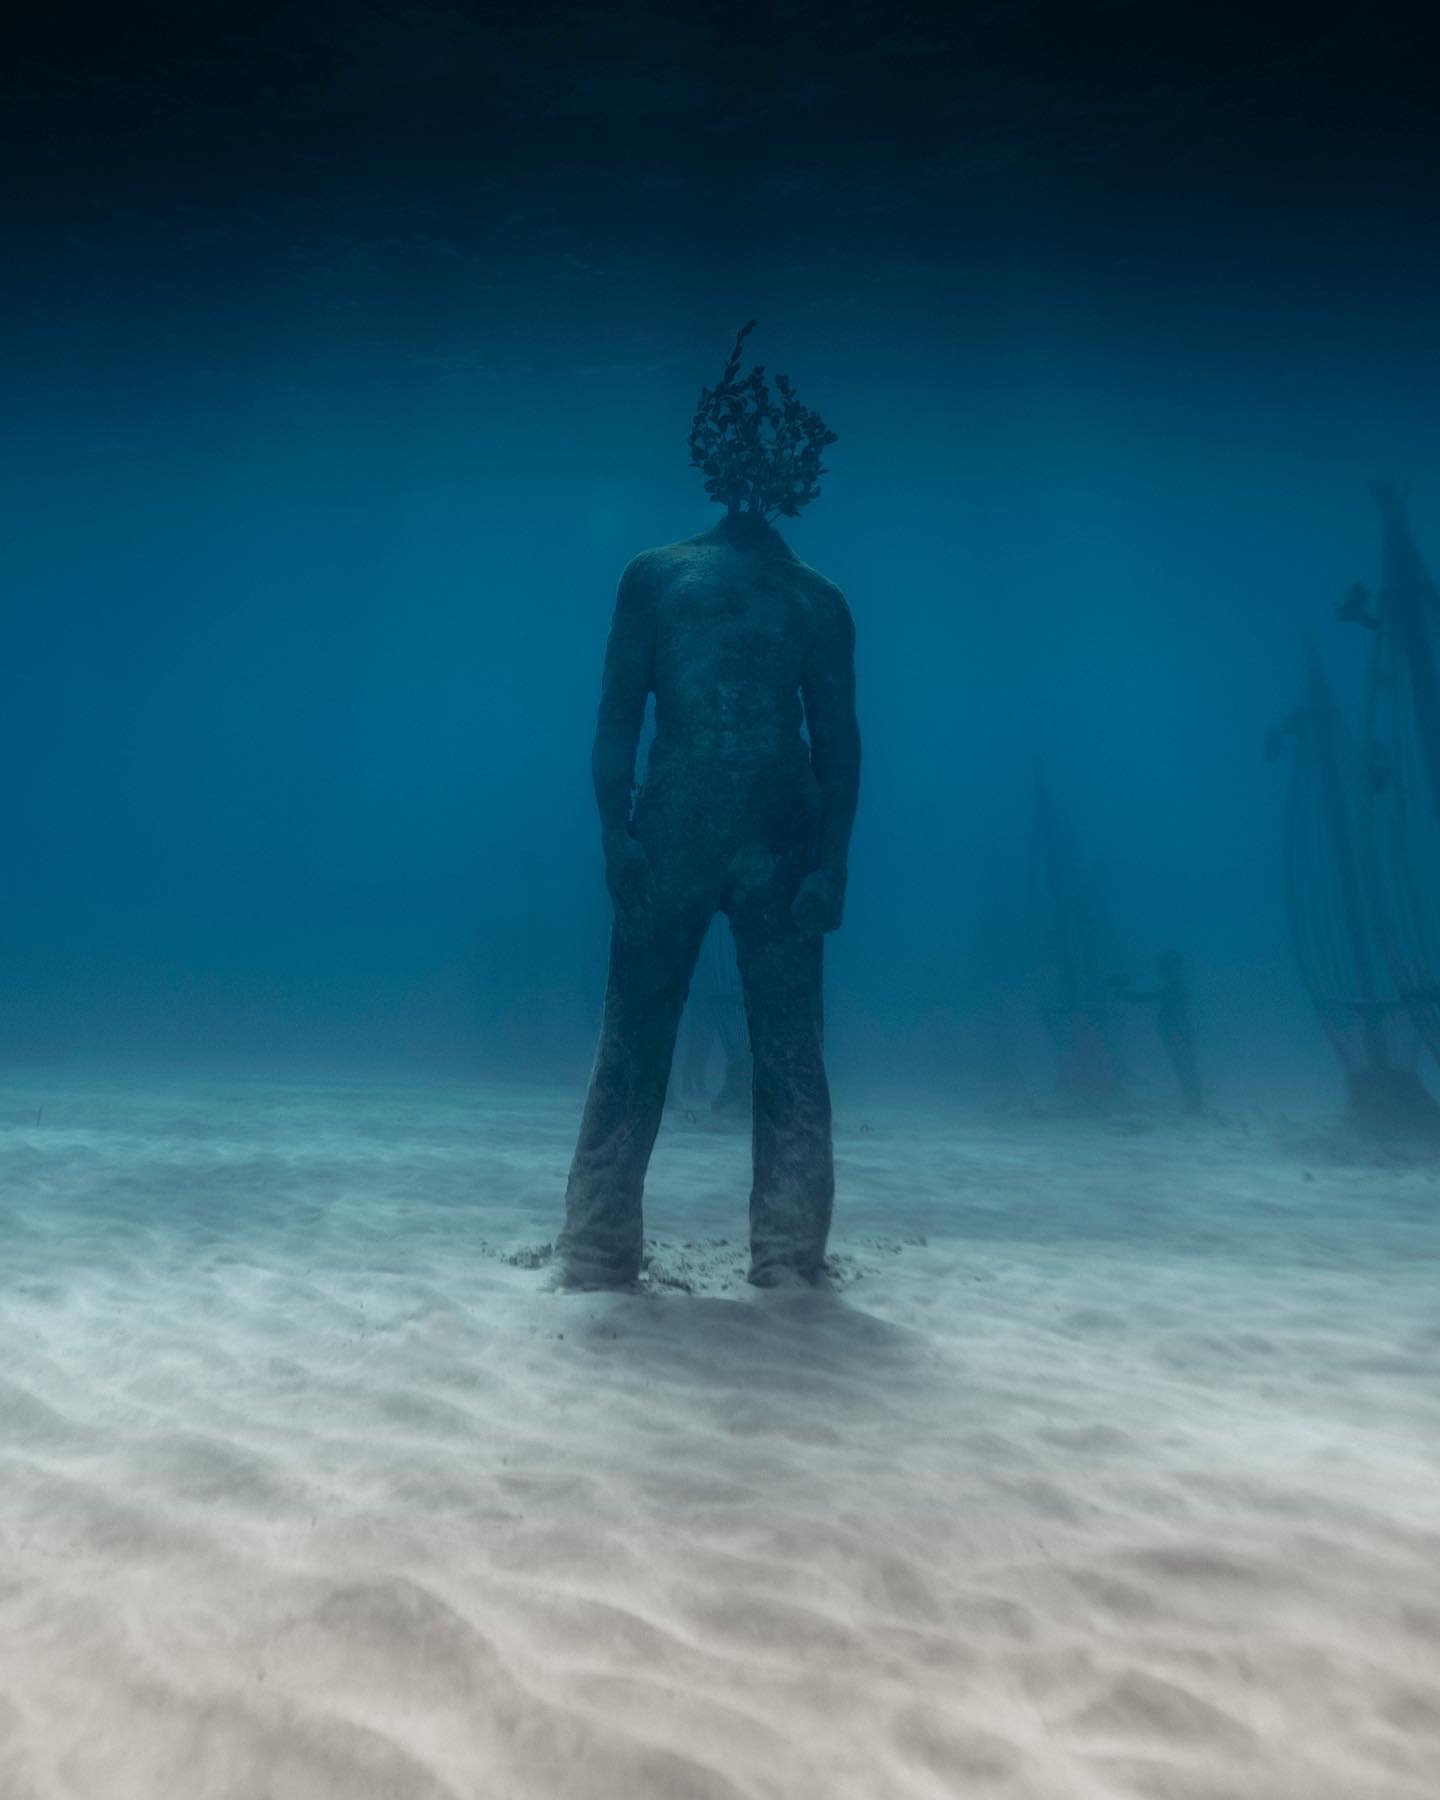 متحف تحت الماء في قبرص